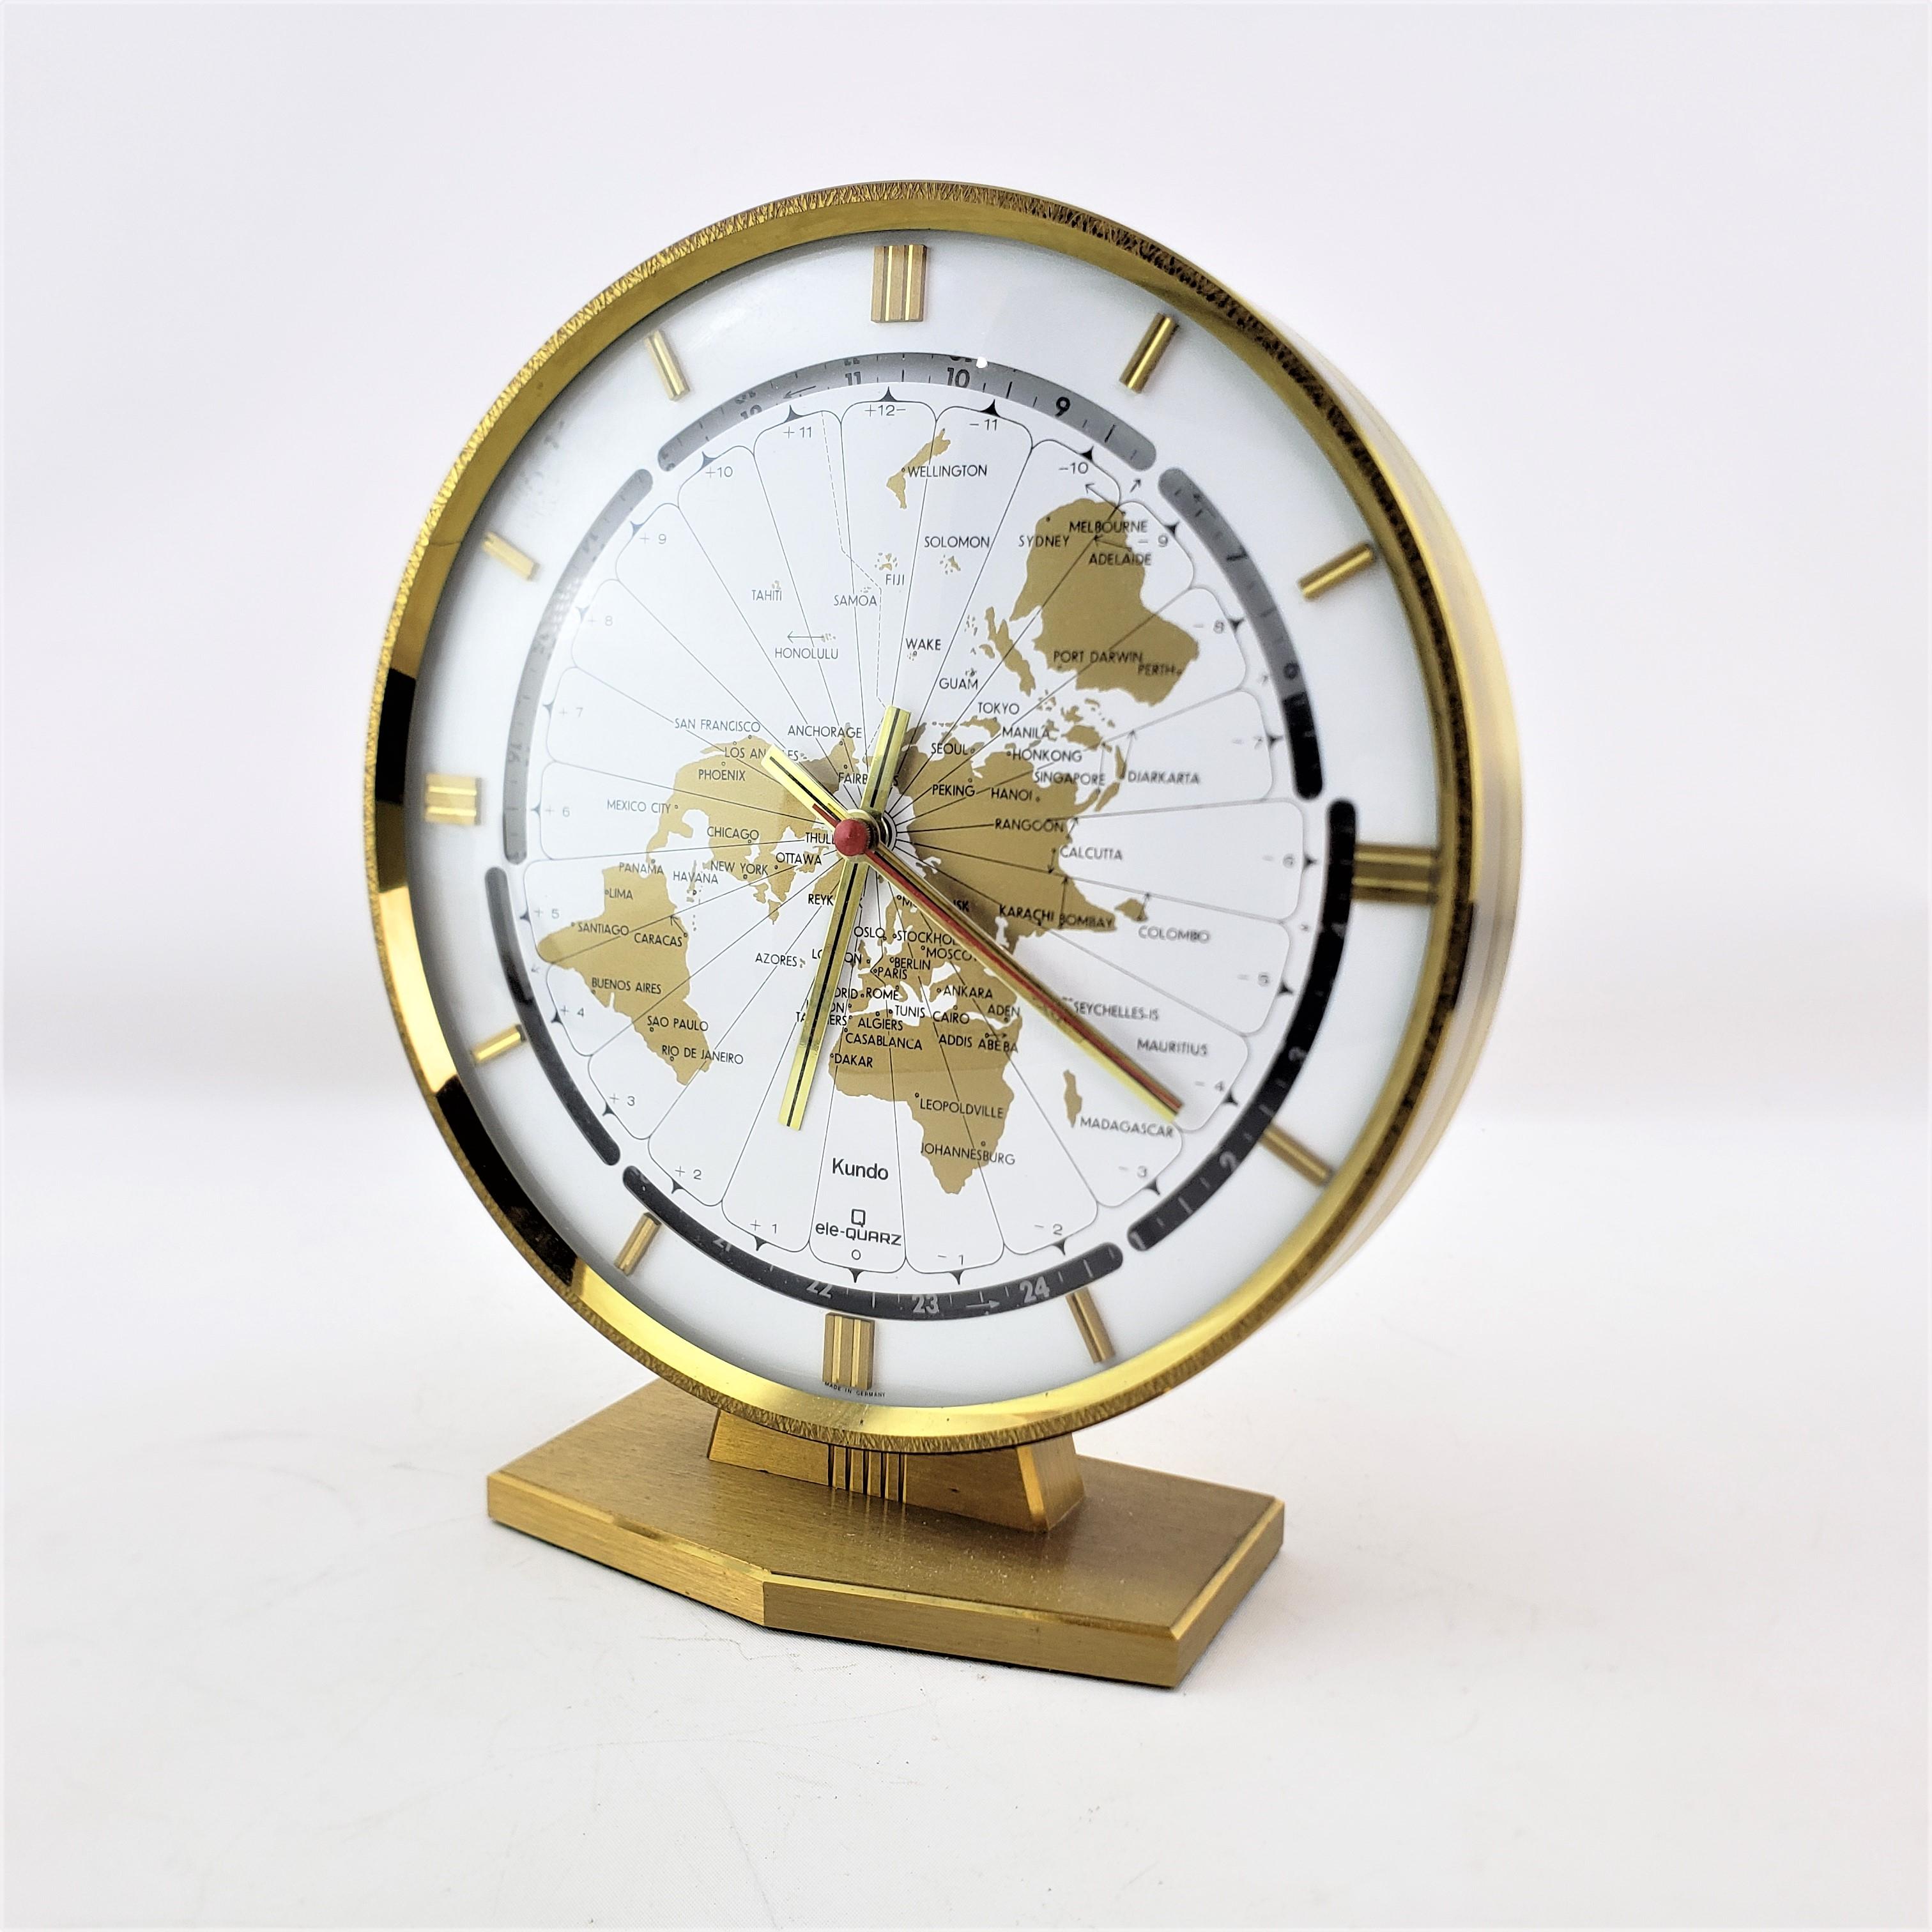 Diese Uhr wurde von der bekannten deutschen Firma Kundo hergestellt und stammt aus der Zeit um 1970 und ist im Stil der Jahrhundertmitte gehalten. Diese Weltkugeluhr zeigt die verschiedenen Zeitzonen auf dem Zifferblatt an. Ein schwarzes und ein